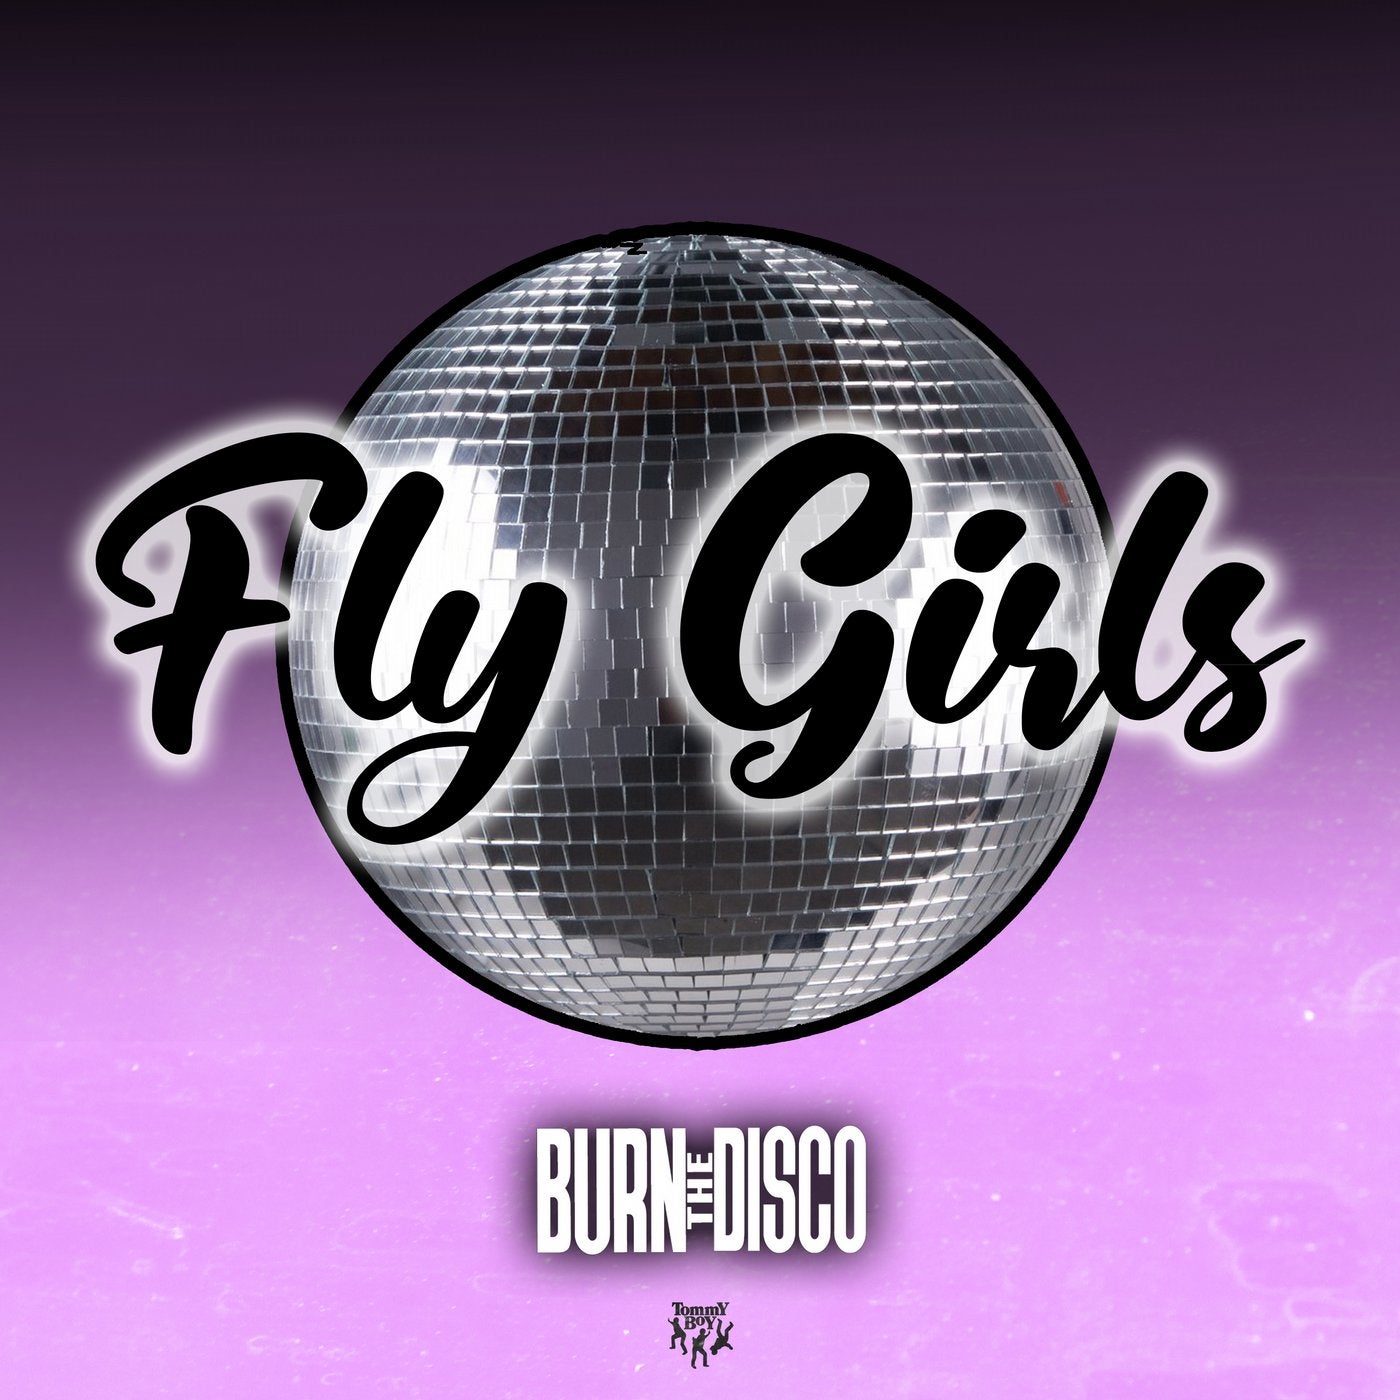 FLY GIRLS